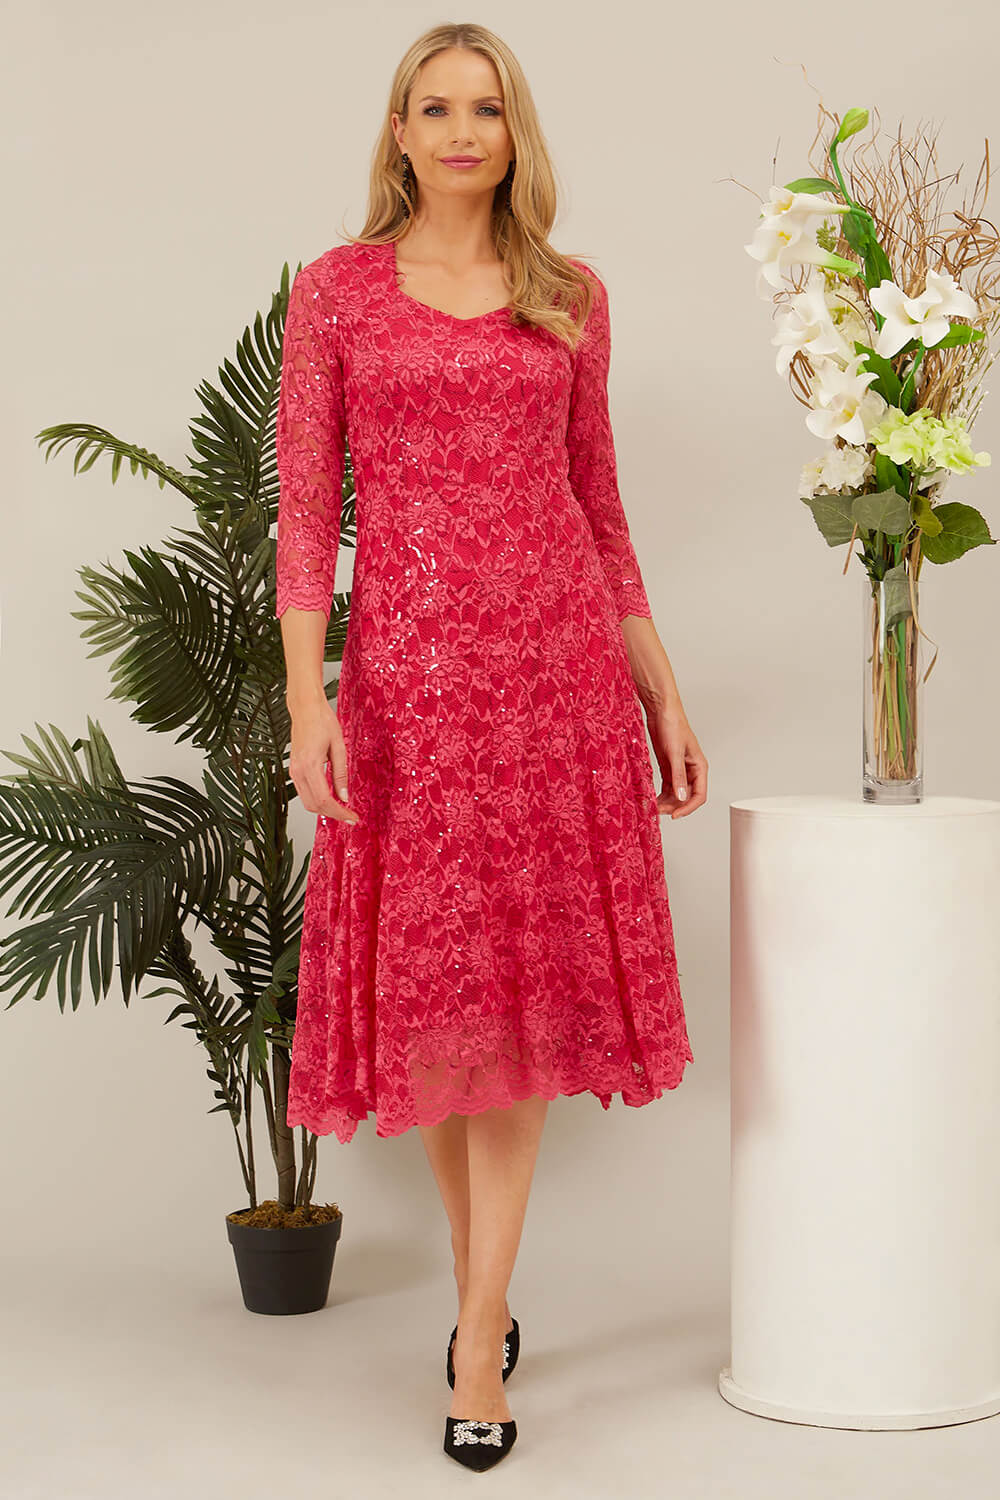 CERISE Julianna Sequin Lace Midi Dress, Image 3 of 4